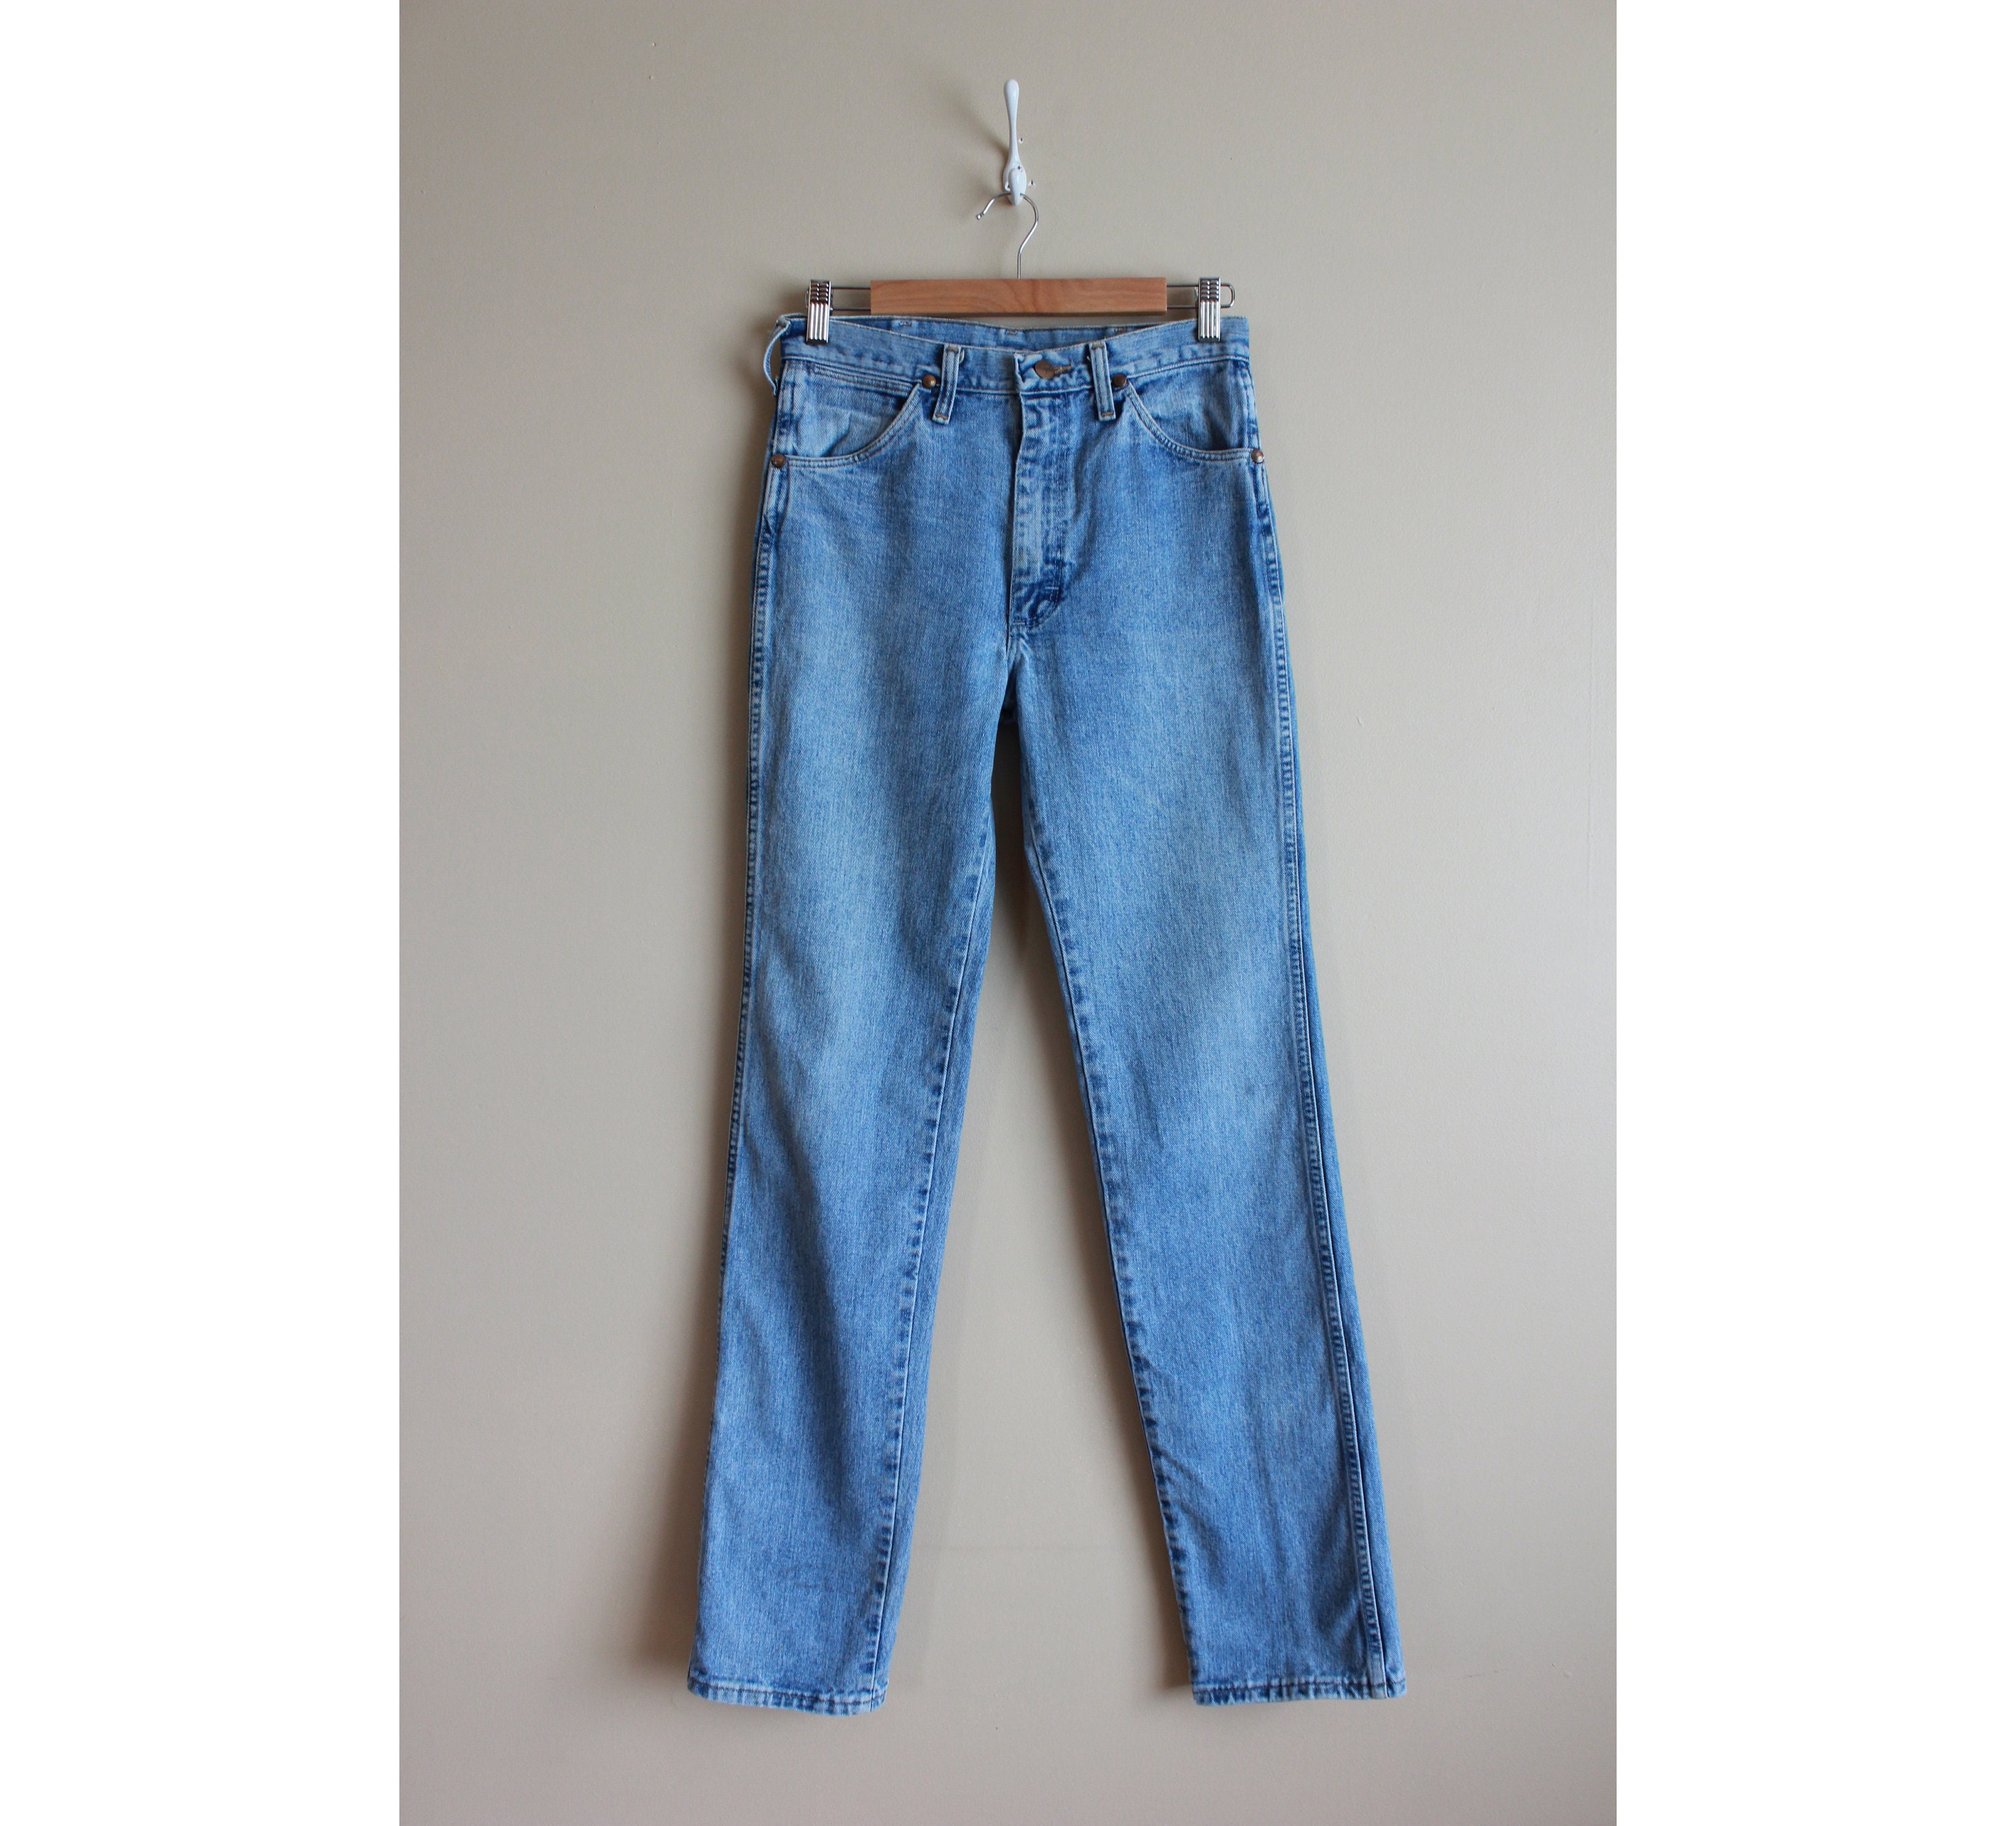 vintage 60s 70s wrangler Talon Zipper no fault denim jeans 27” x 32.5"